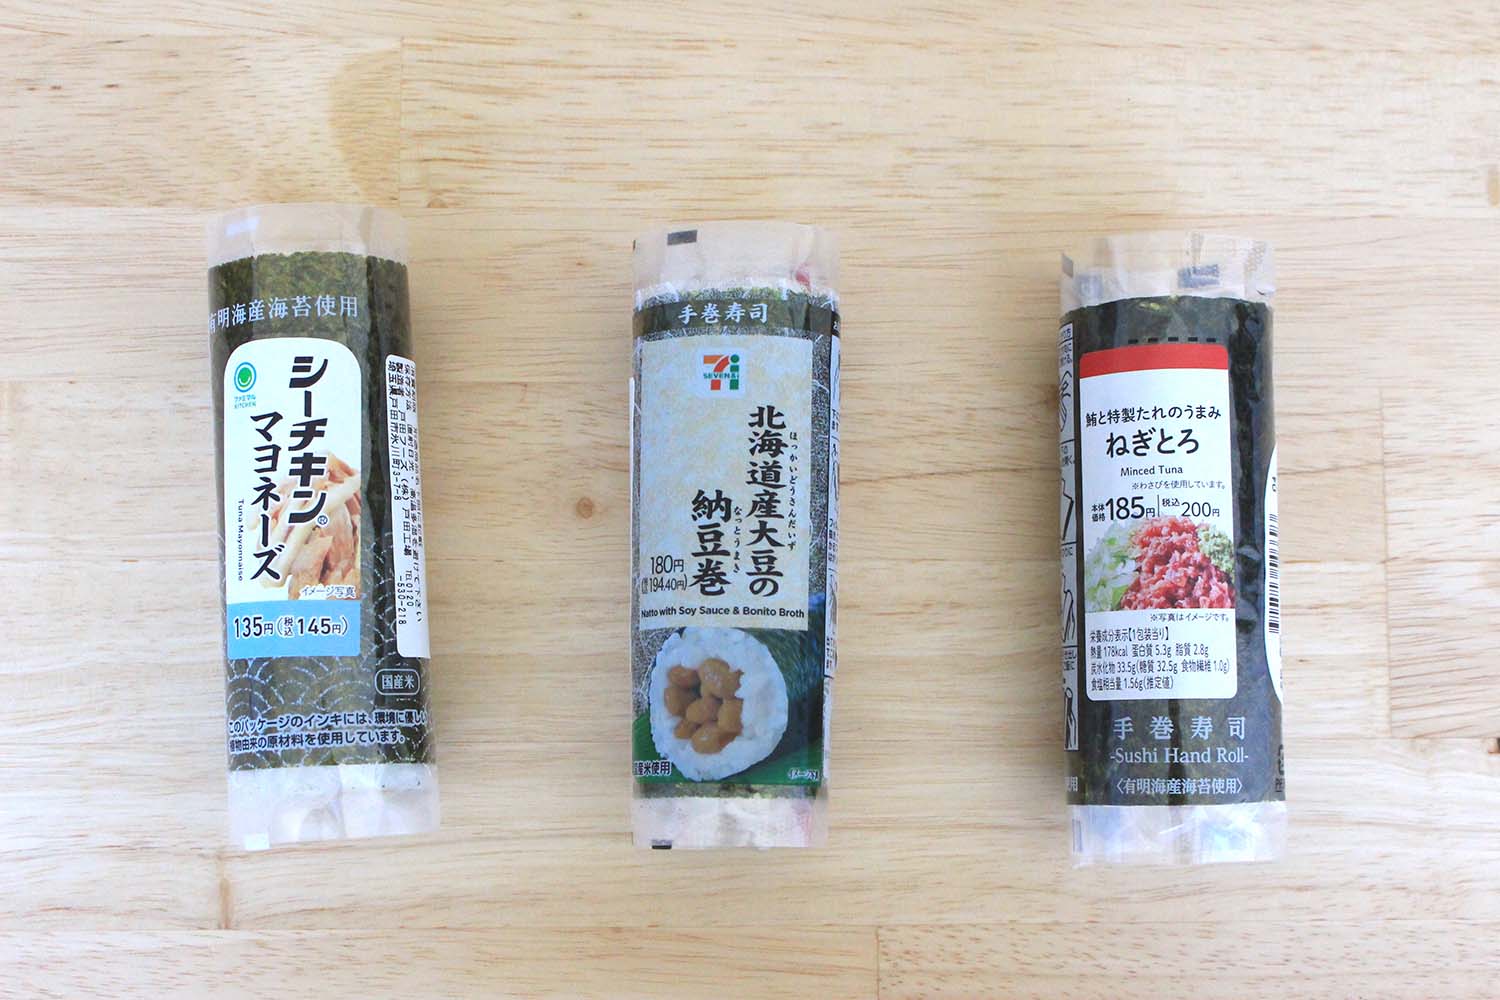 편의점 김밥, 노리마키 먹는 방법 | 완벽하게 뜯는 방법과 편집부가 추천하는 노리마키를 소개!